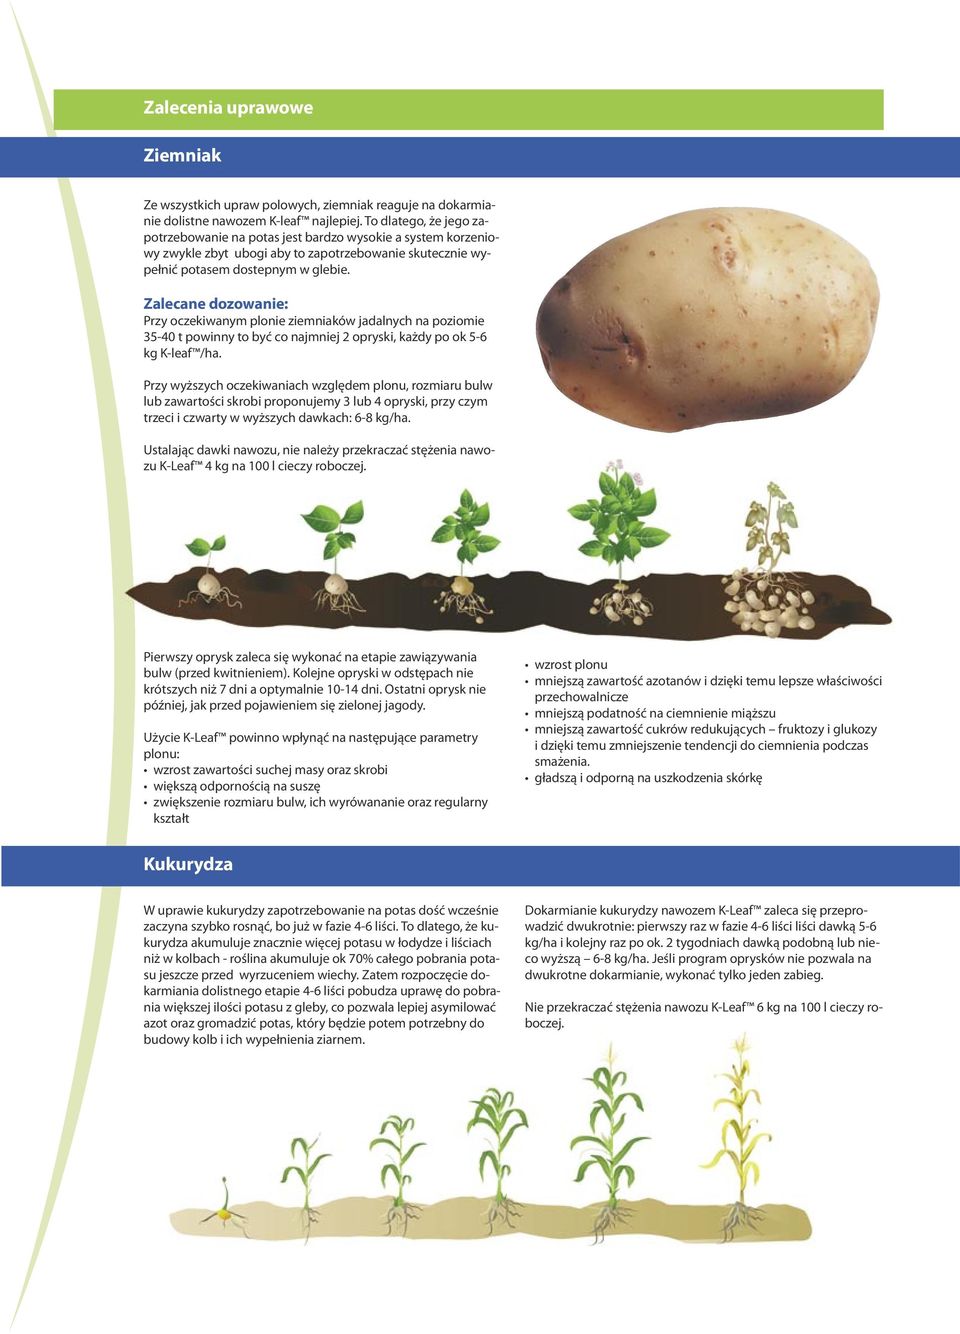 Zalecane dozowanie: Przy oczekiwanym plonie ziemniaków jadalnych na poziomie 35-40 t powinny to być co najmniej 2 opryski, każdy po ok 5-6 kg K-leaf /ha.